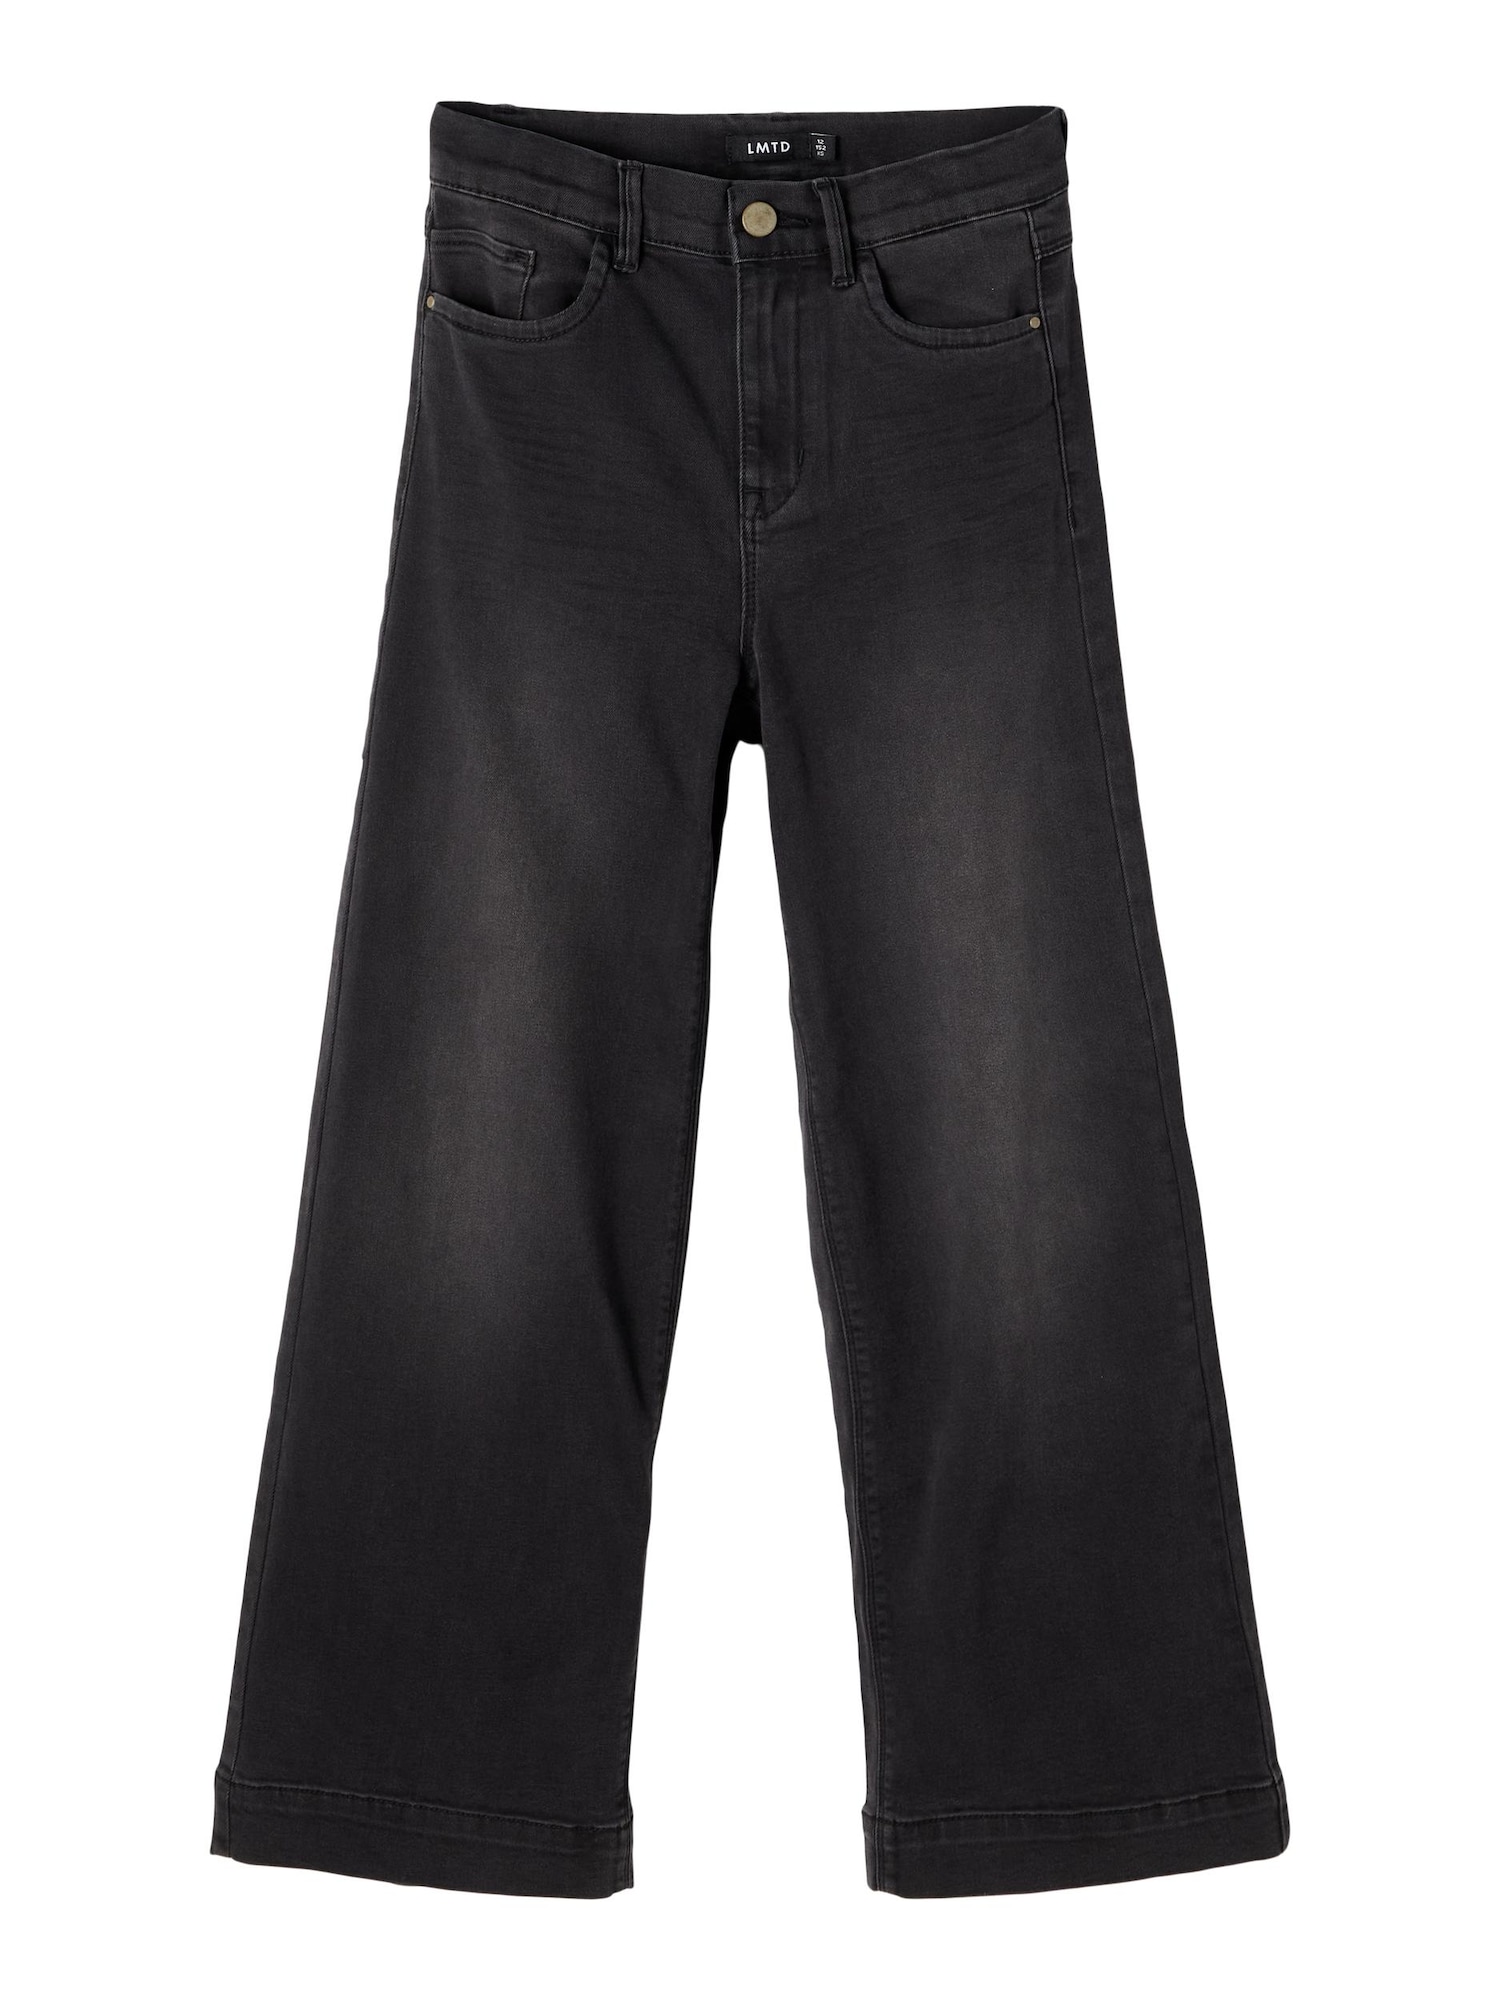 LMTD Džinsai 'Atonsons' juodo džinso spalva